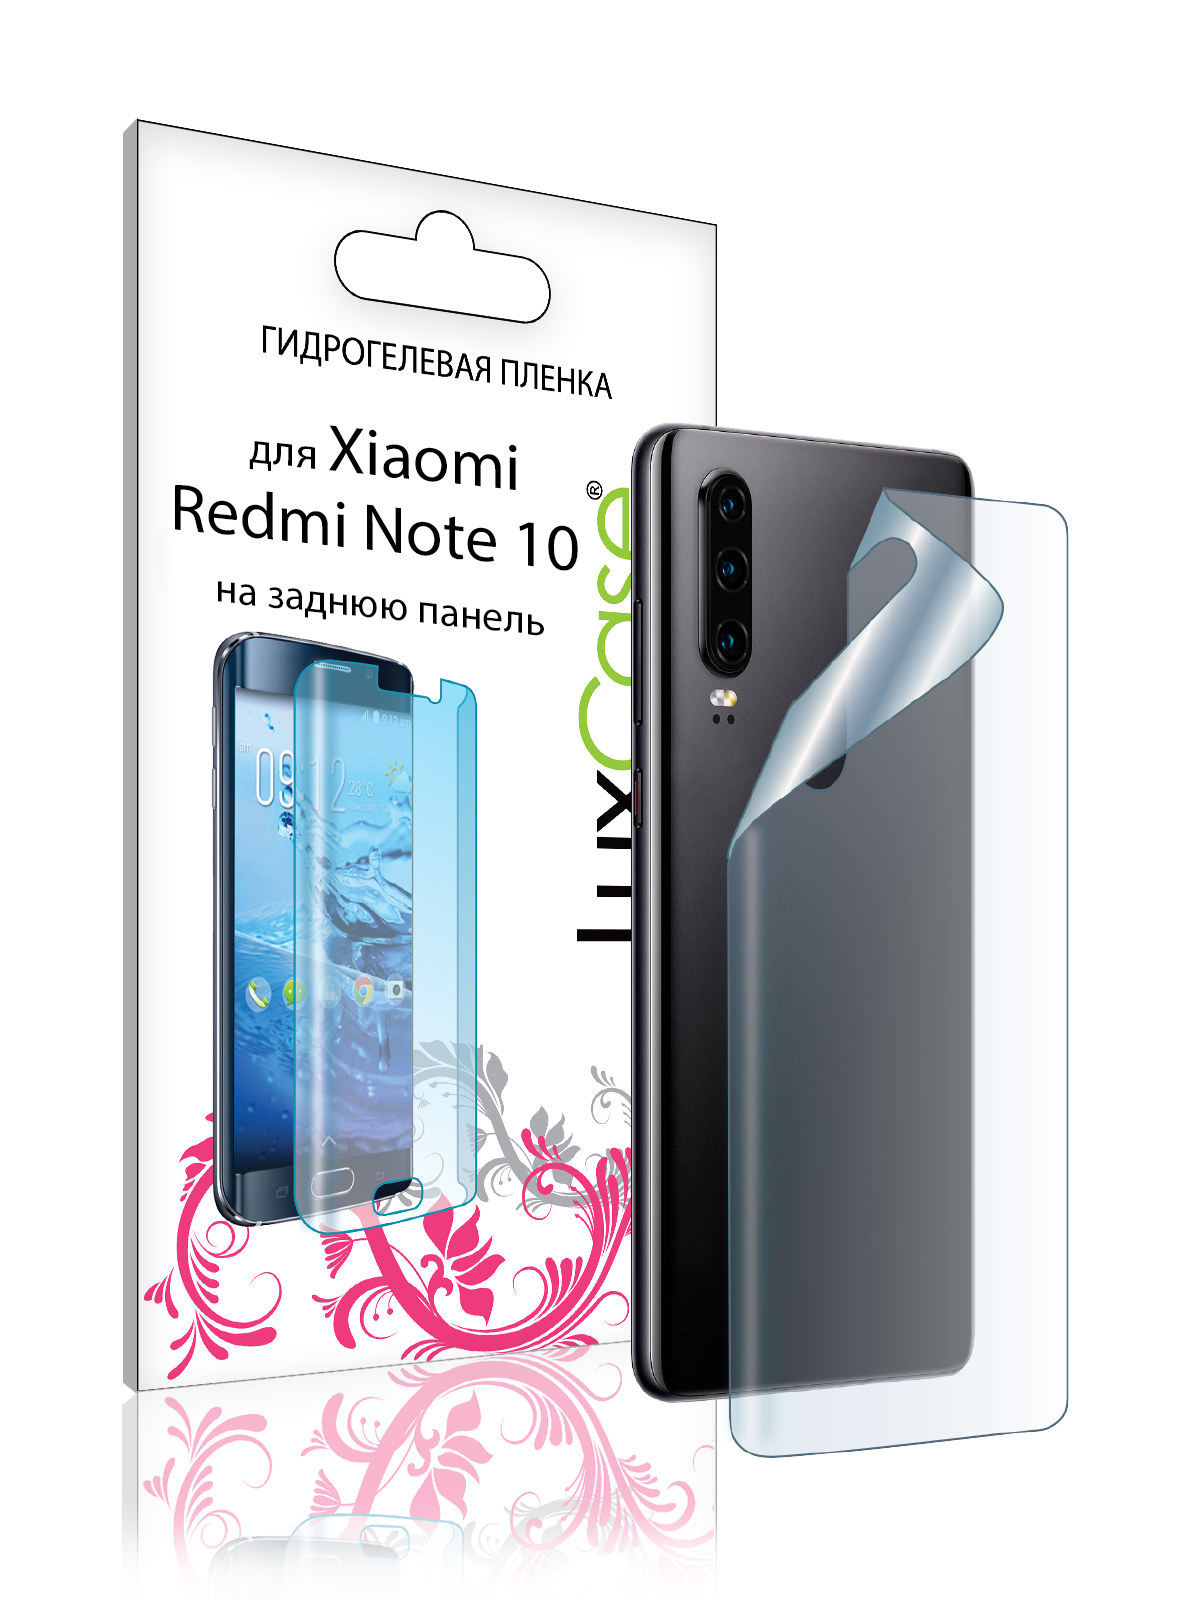 Пленка на заднюю панель LuxCase для Xiaomi Redmi Note 10 0.14mm Transperent 86695 гидрогелевая пленка для xiaomi redmi 10 prime ксиаоми редми 10 прайм на дисплей и заднюю панель матовая